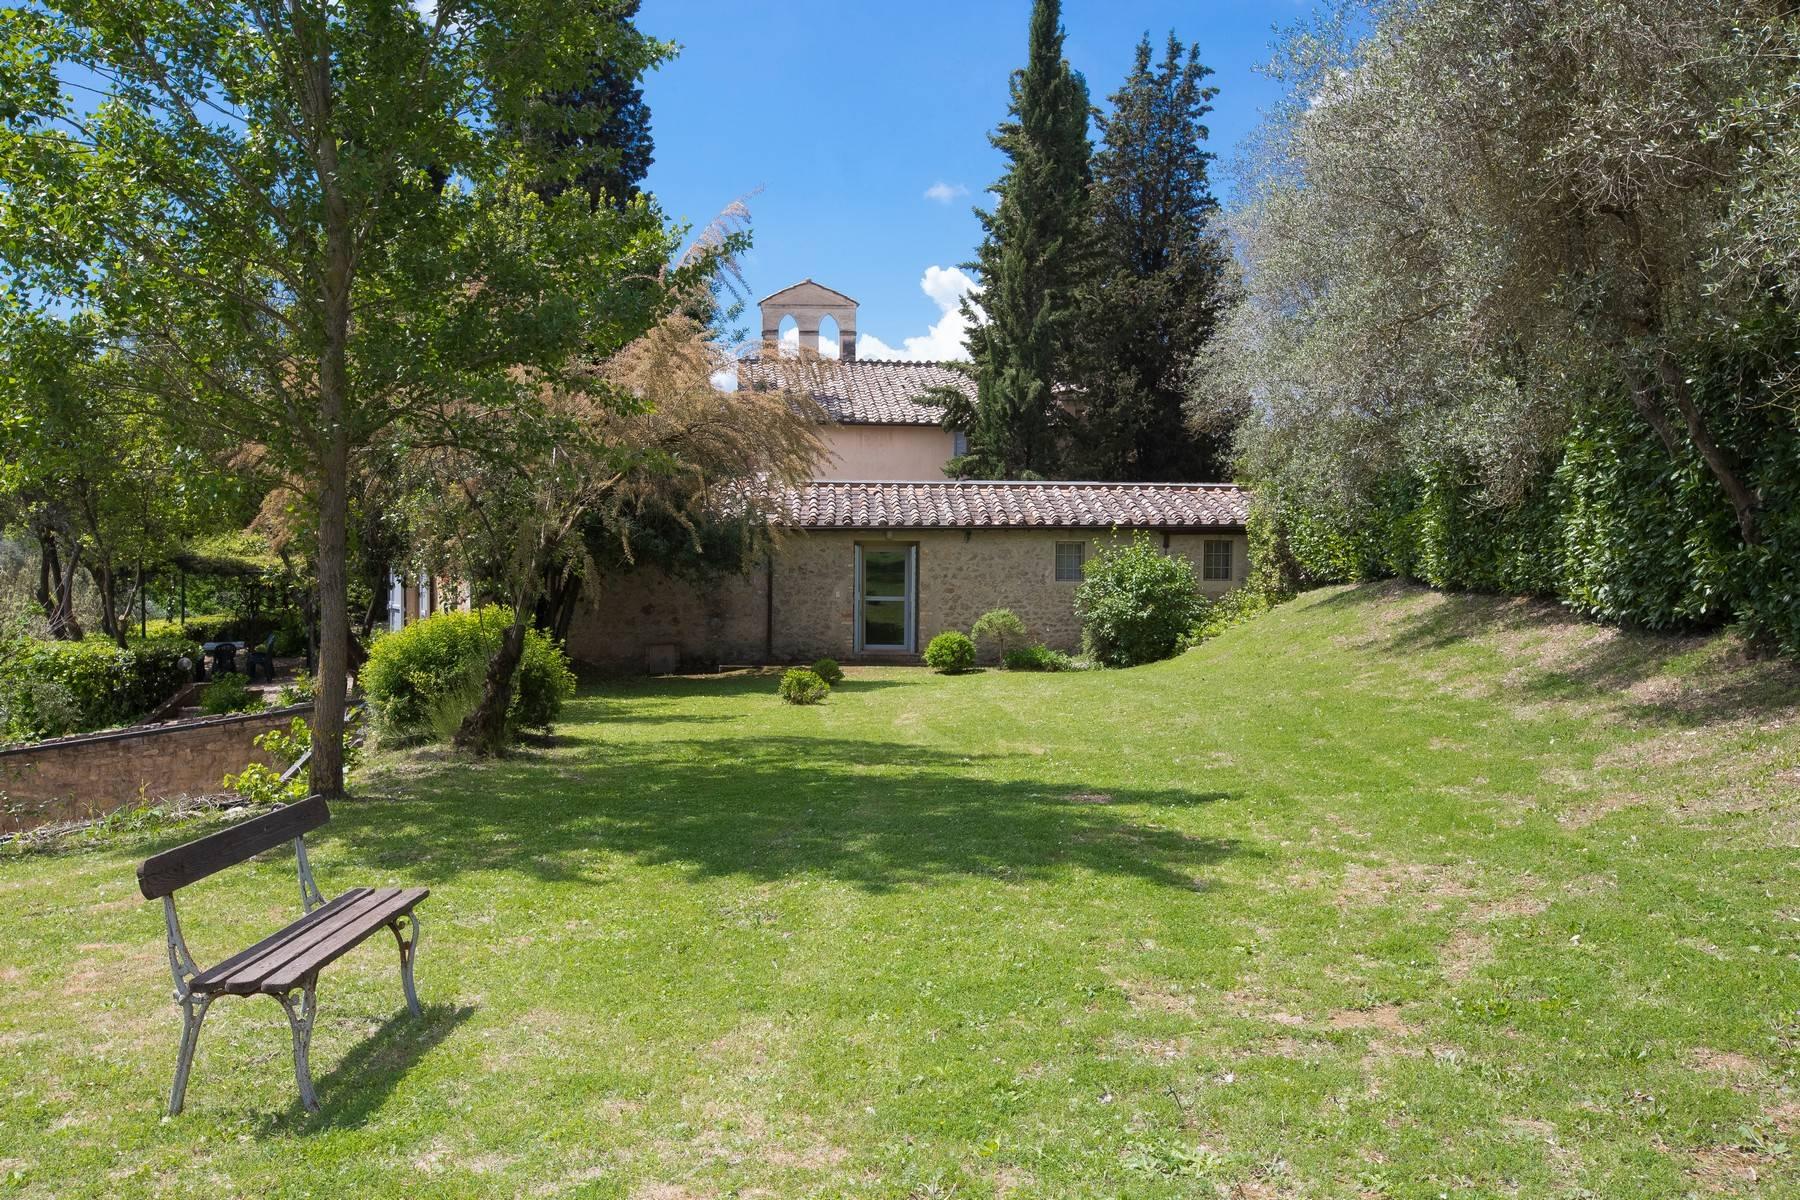 Villa mit Kapelle und Pool nur wenige Kilometer vom Siena Stadtzentrum entfernt - 1